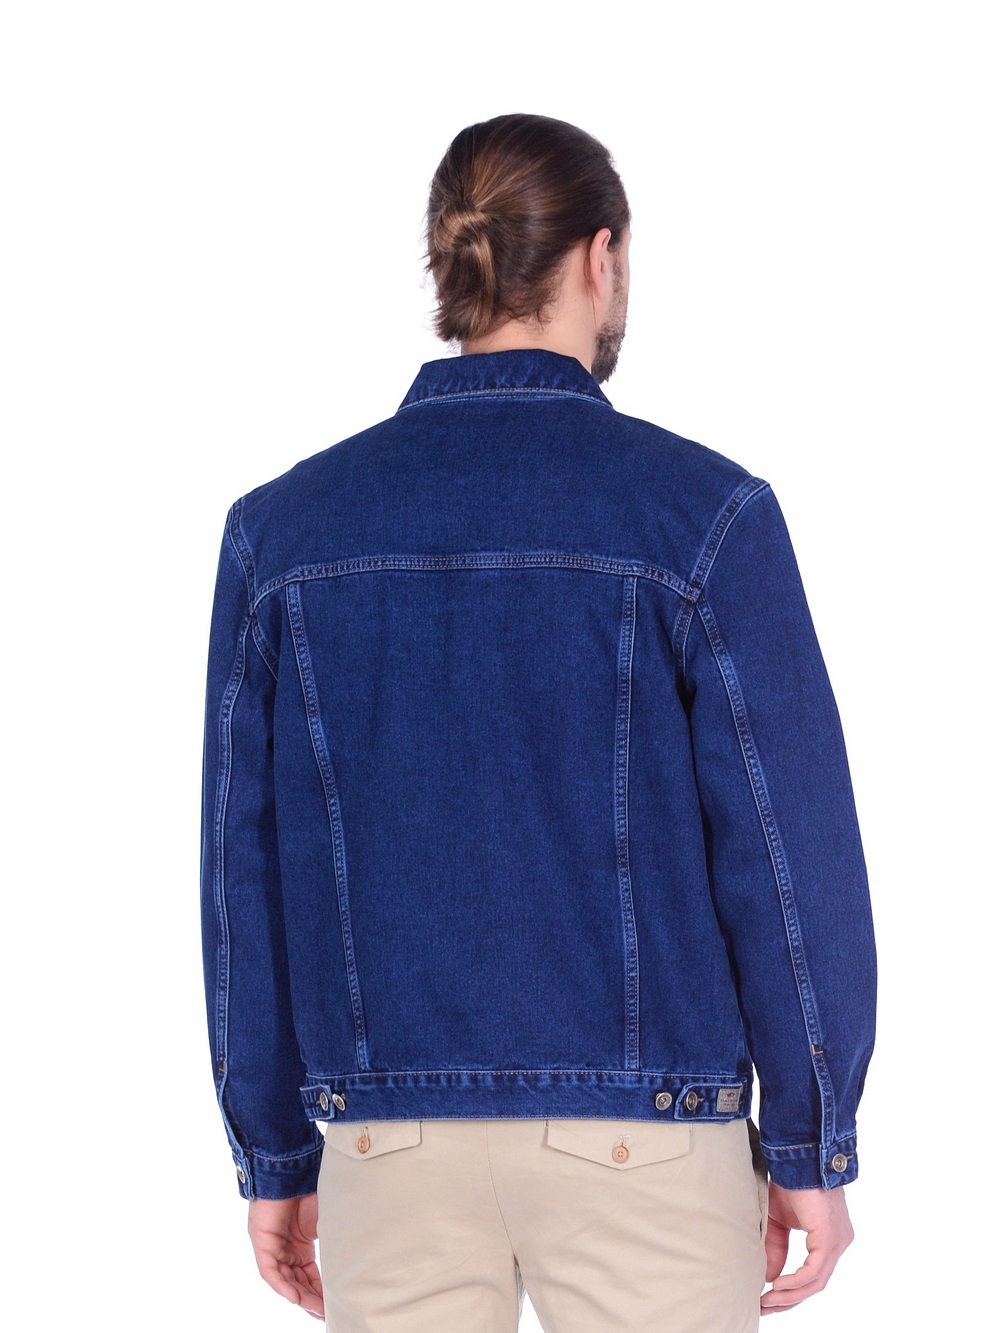 Джинсовая куртка мужская Dairos GD5060104 синяя M